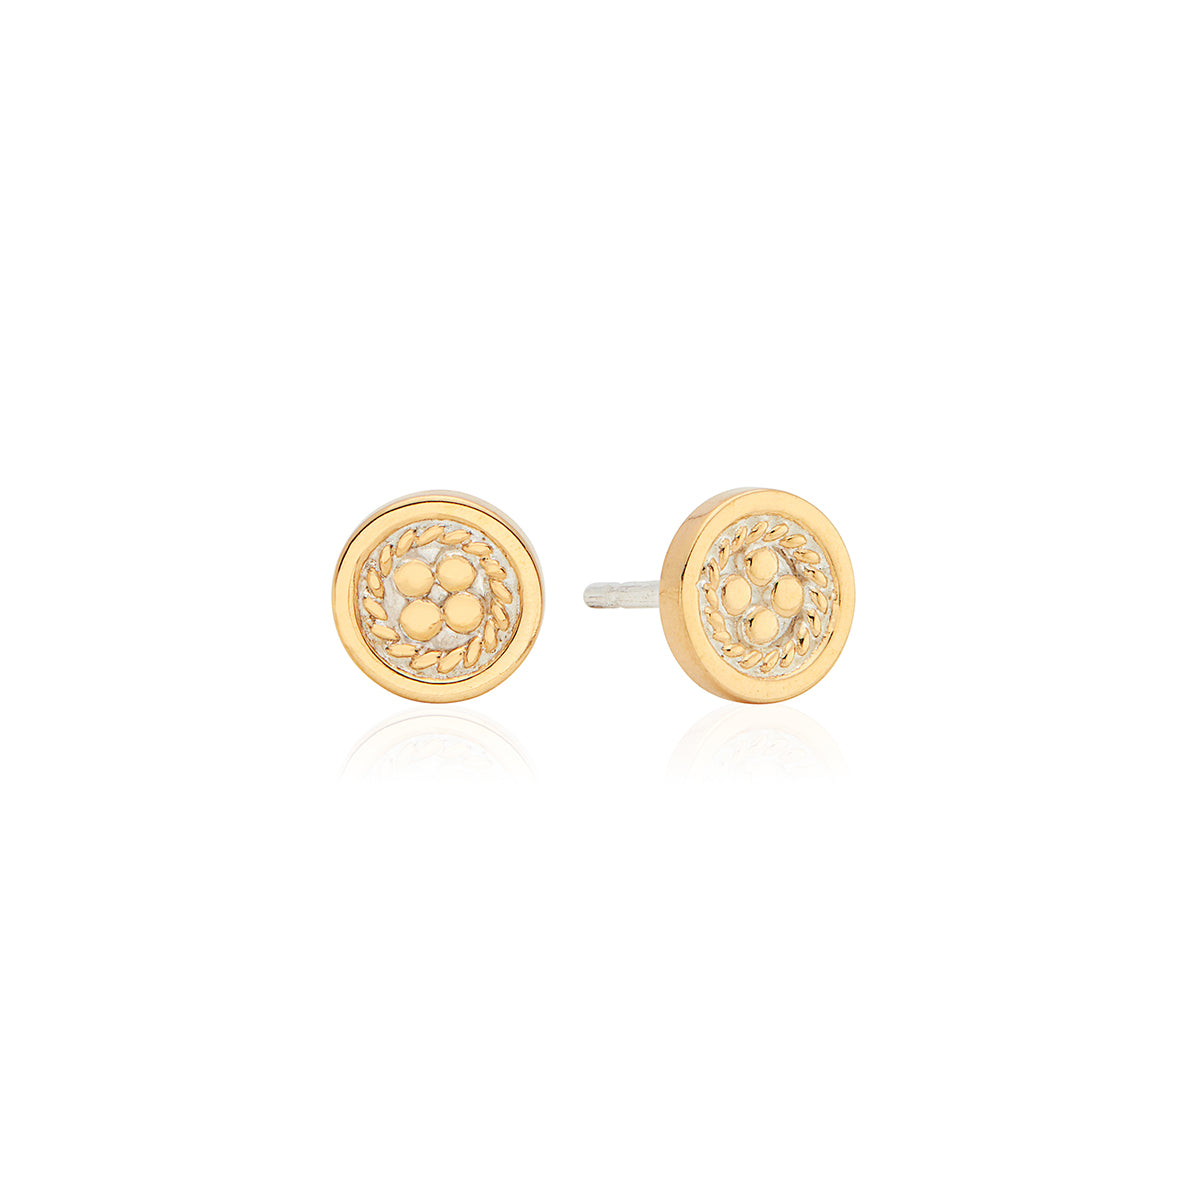 Lana 18k gold plated earring back stud – BlingLuve